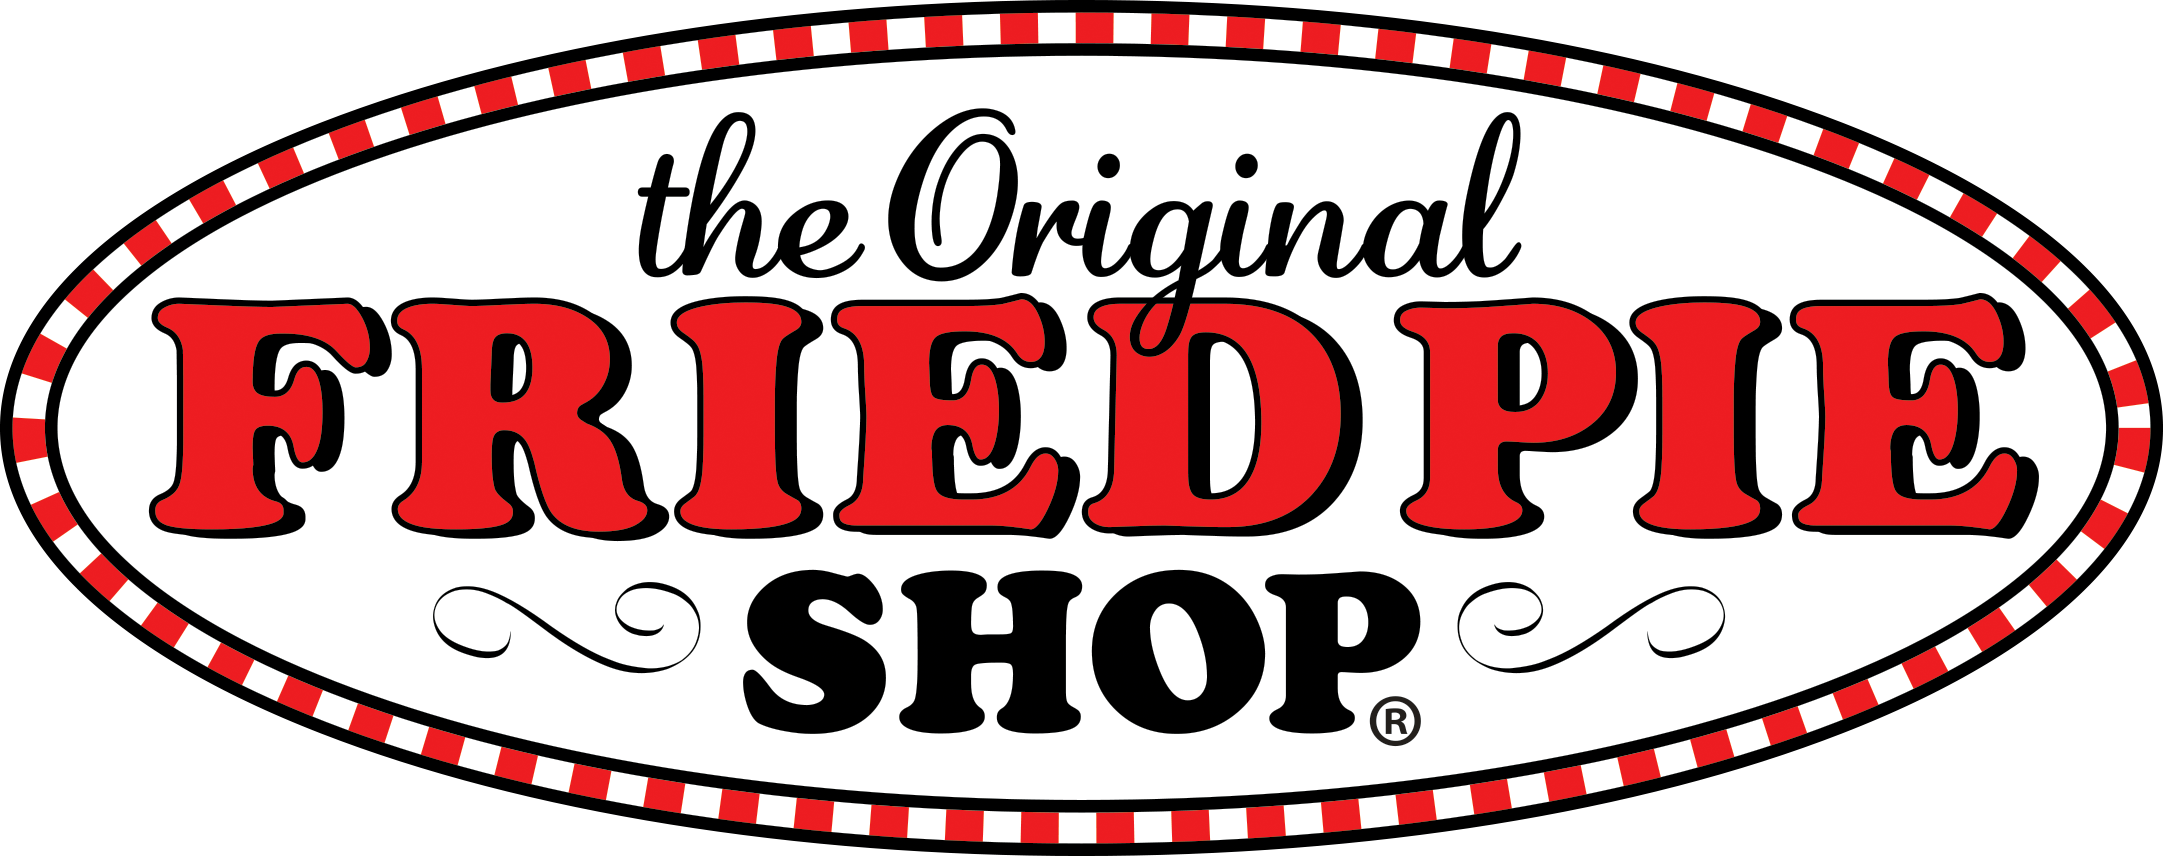 The Original Fried Pie Shop logo